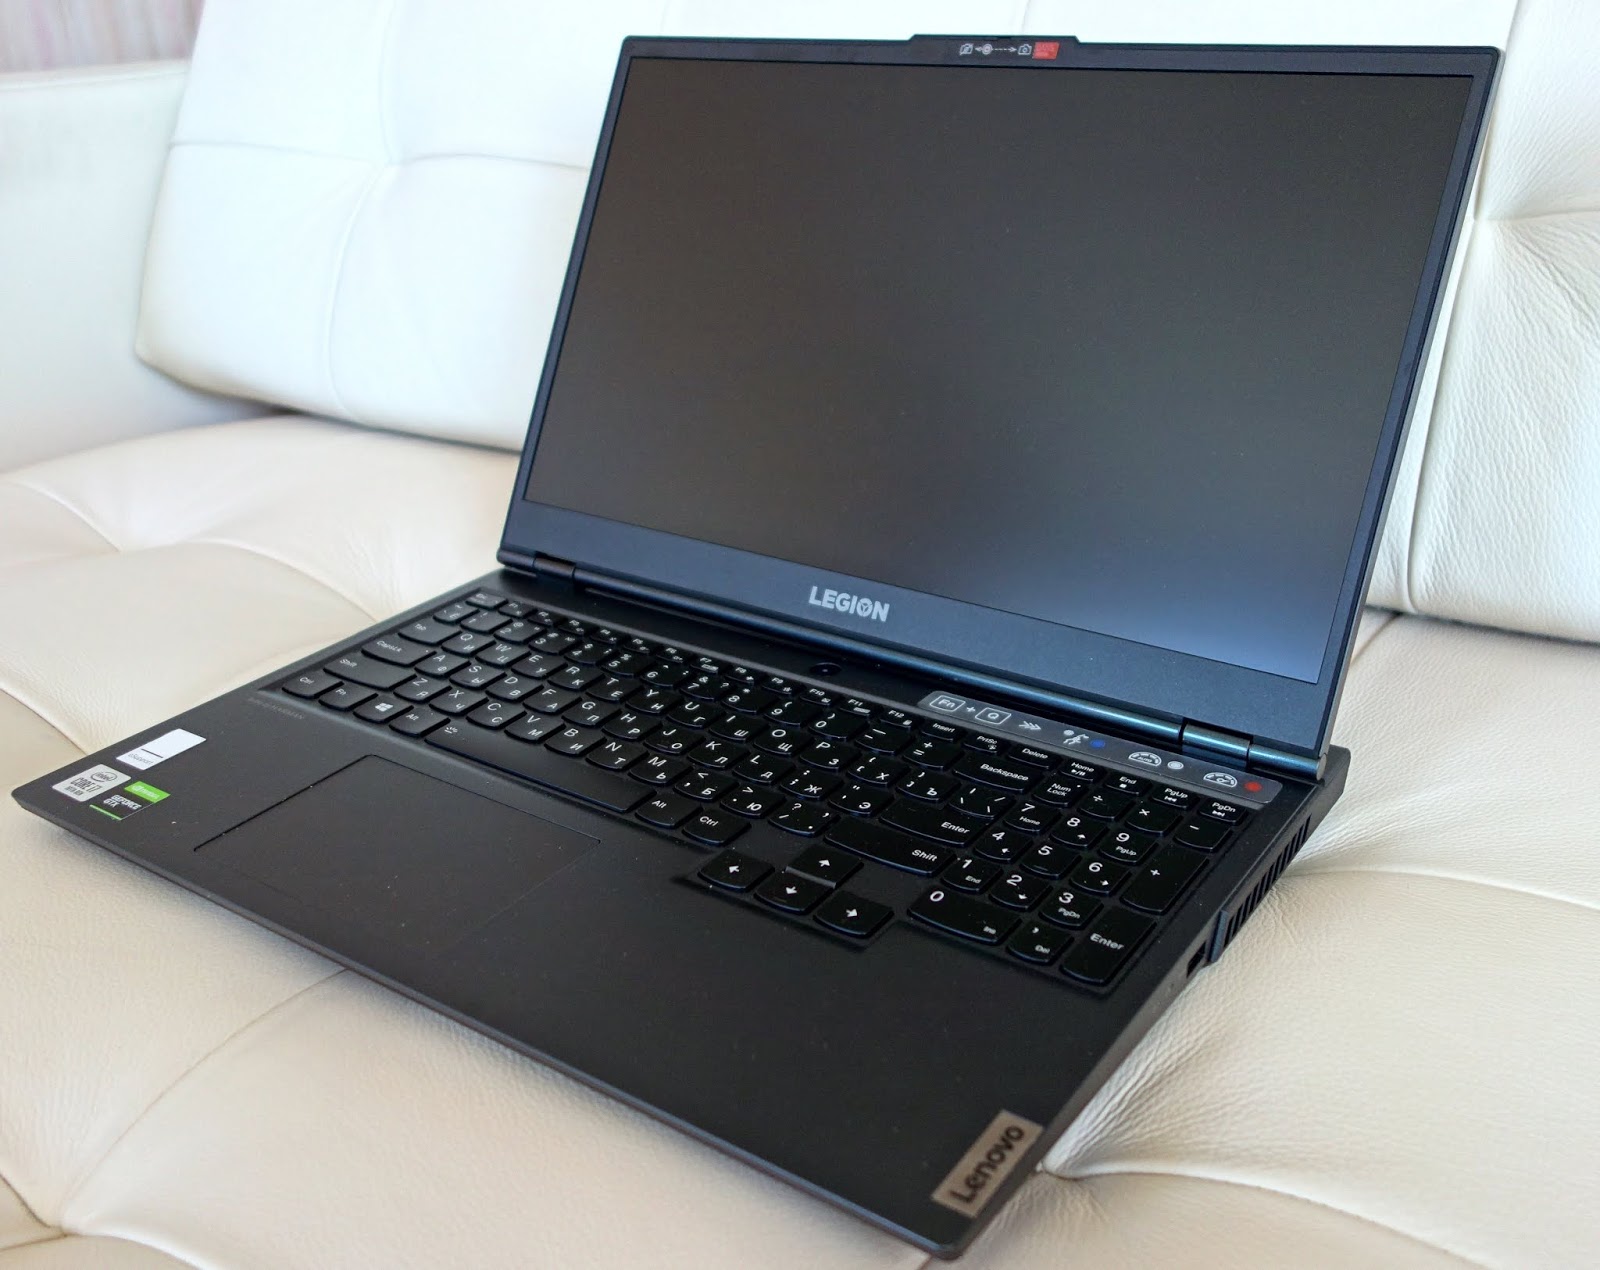 Ноутбук Lenovo Legion 5 Pro Купить Чехии